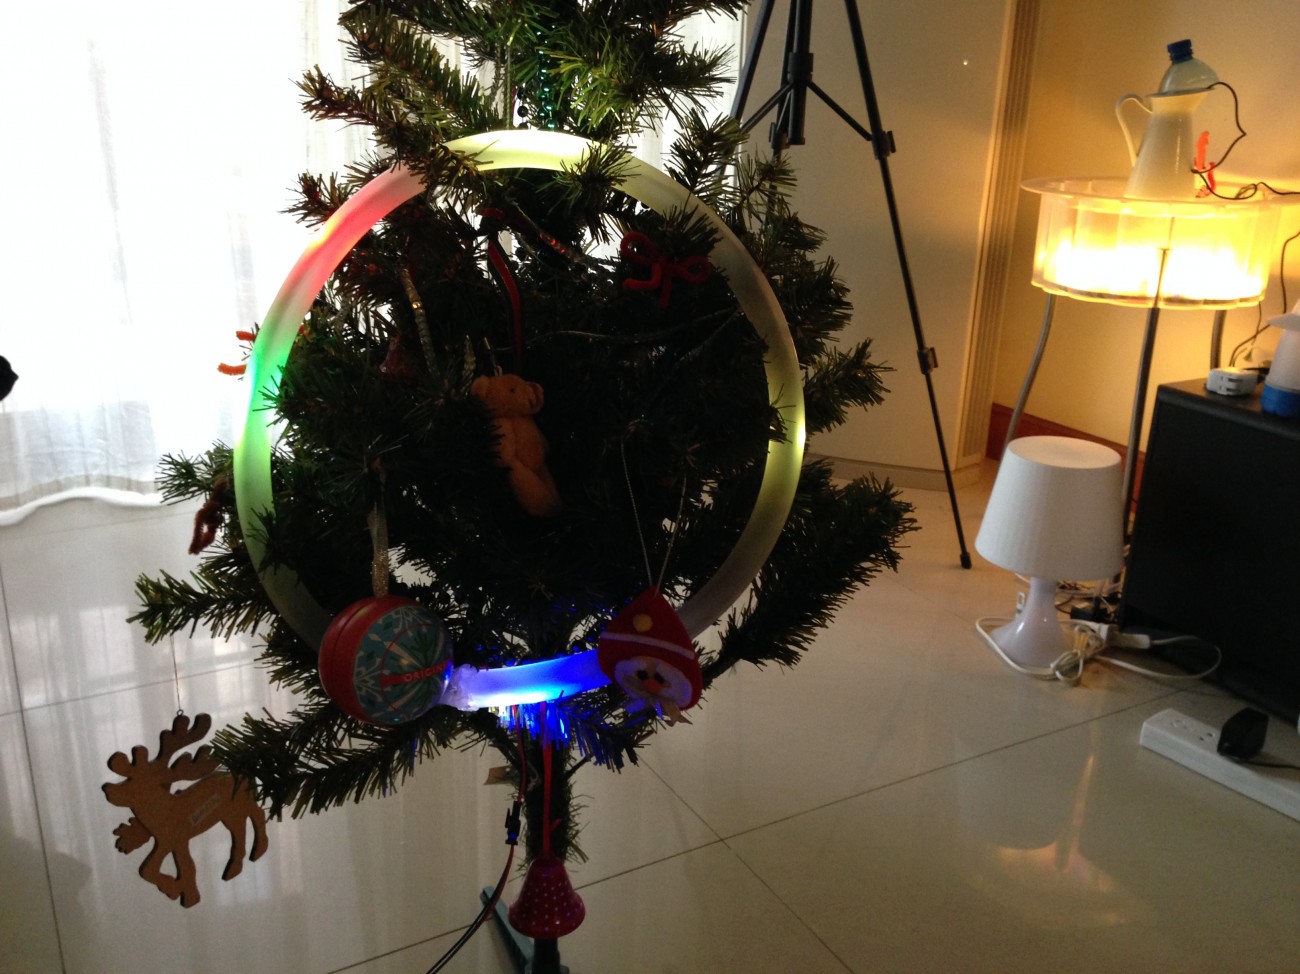 LED Clock on the XMas tree